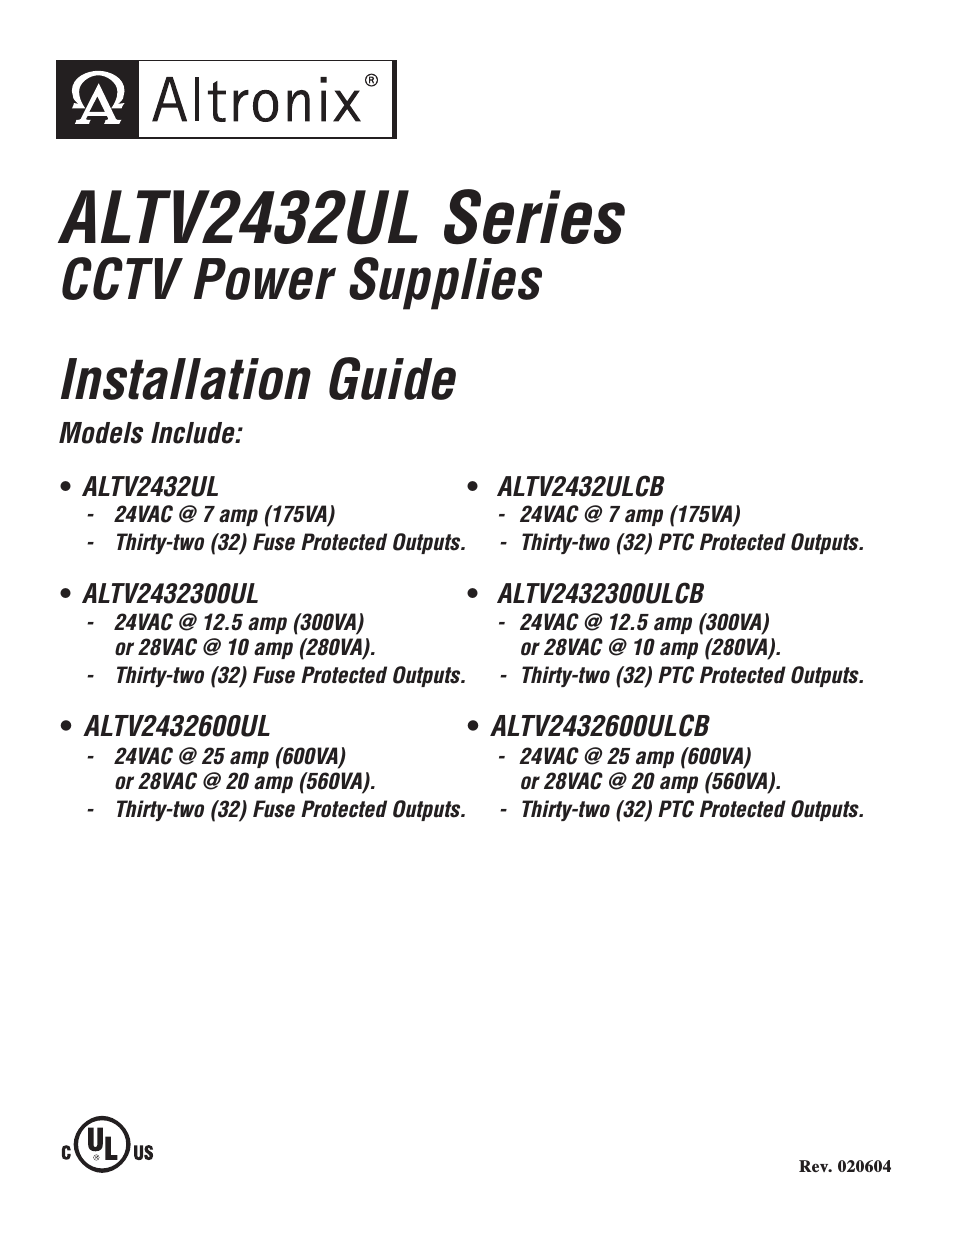 ALTV2432600ULCB3 Installation Instructions